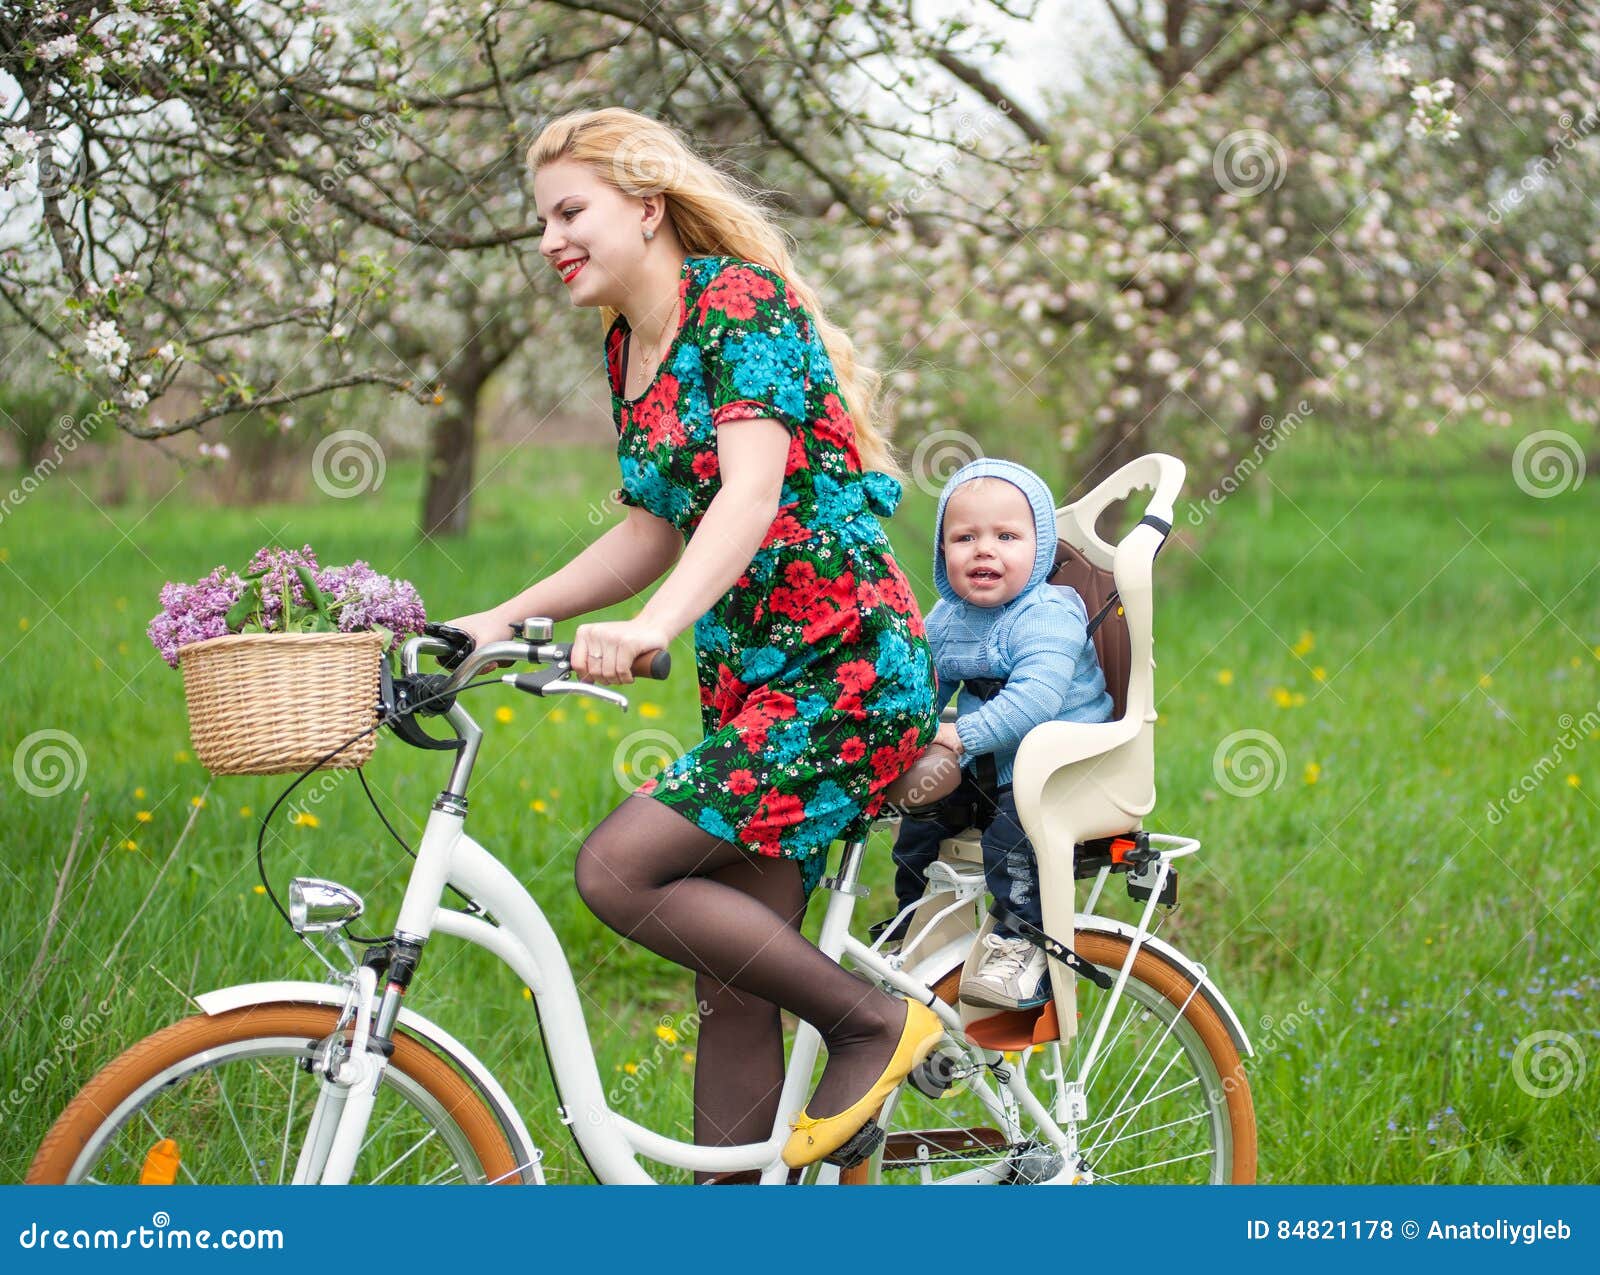 Ξανθό θηλυκό οδηγώντας ποδήλατο πόλεων με το μωρό στην καρέκλα ποδηλάτων  Στοκ Εικόνες - εικόνα από babylonia, lifestyle: 84821178